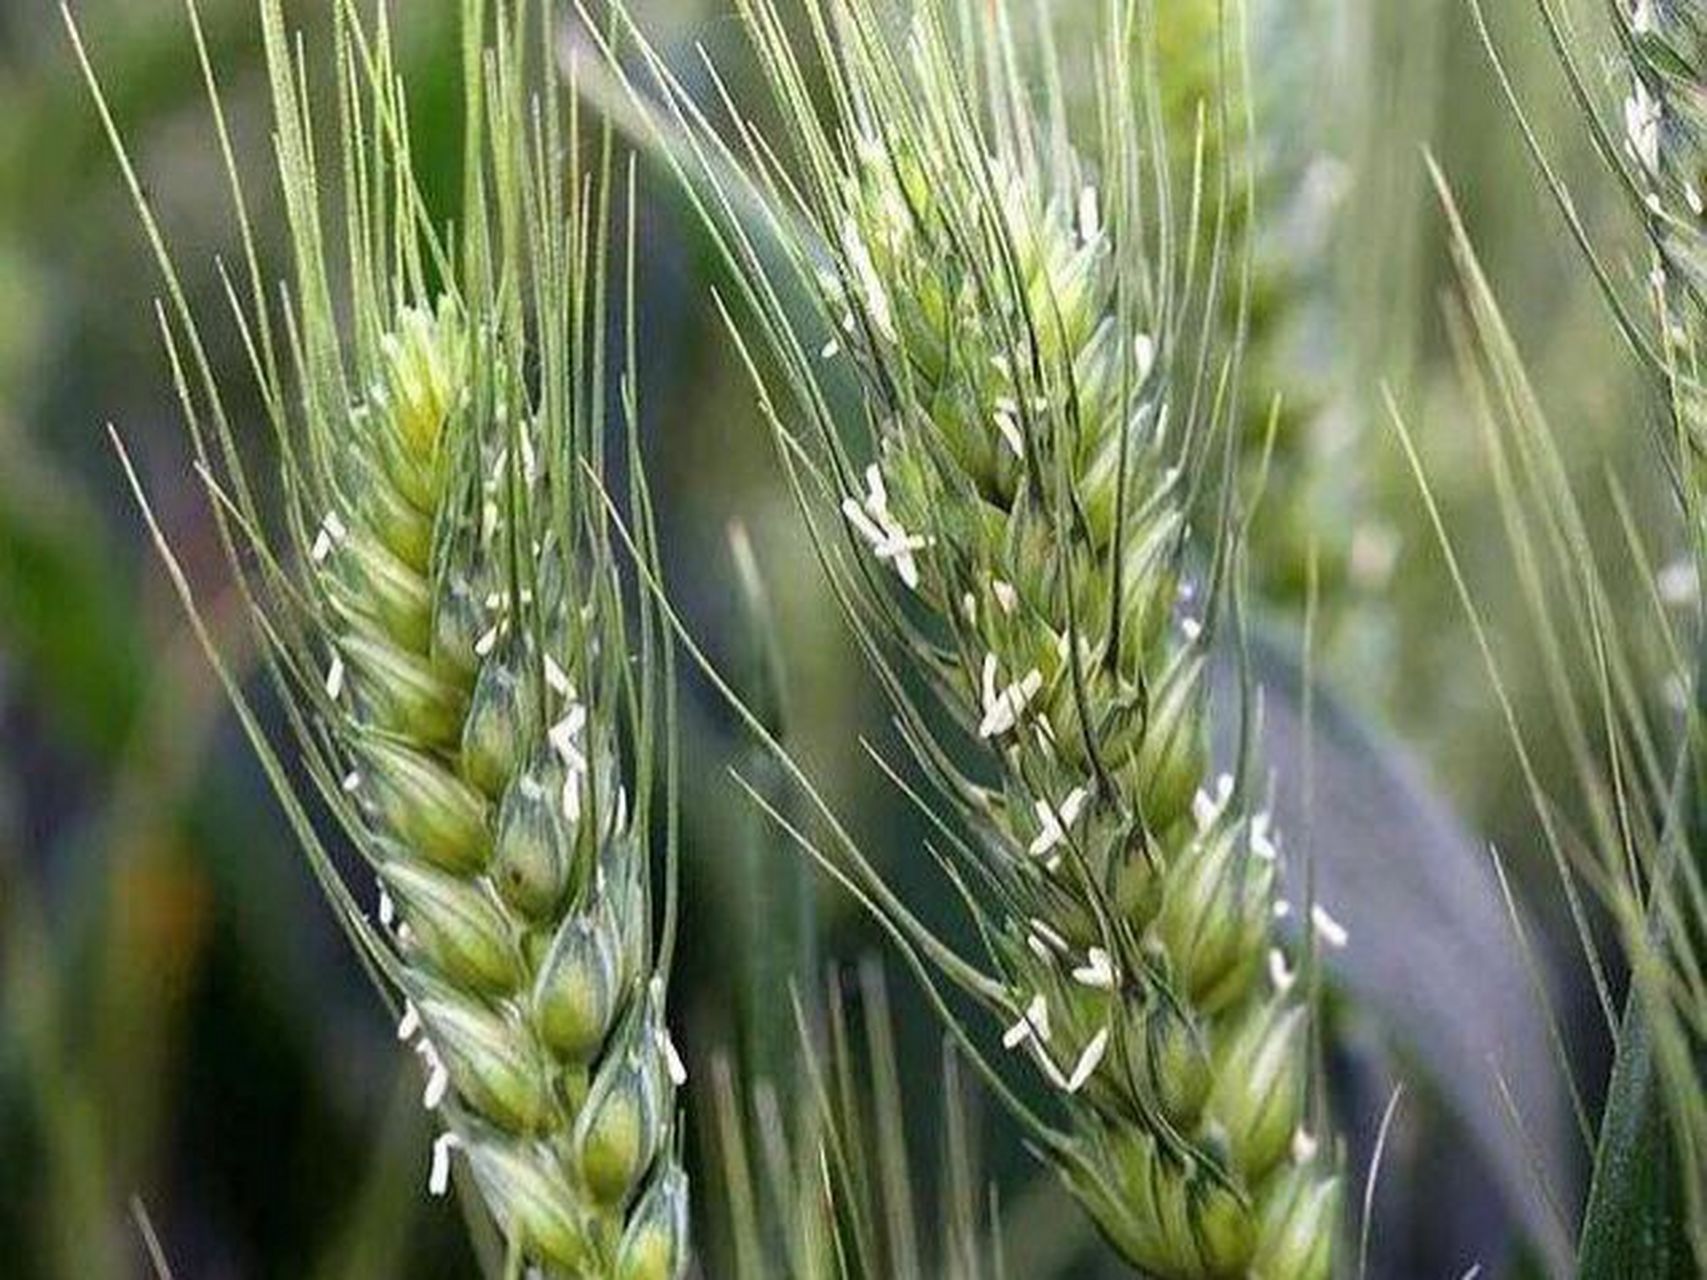 小麦花:小麦的花排列为复穗状花序,通常称作麦穗,麦穗由穗轴和小穗两